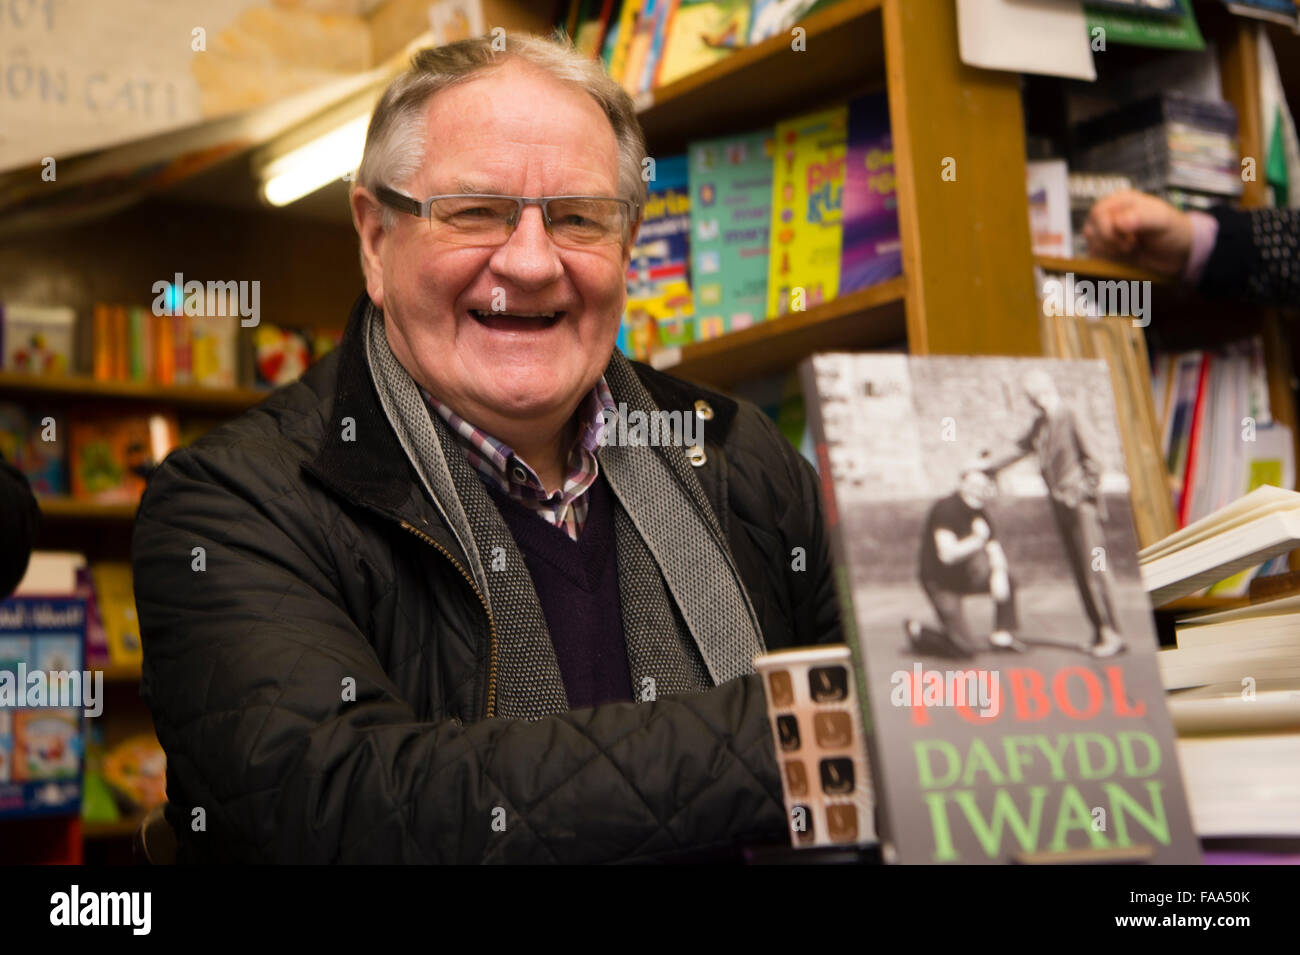 La cantante galesa, performer, idioma, activista político y escritor Dafydd Iwan en una firma de su 'Pobl autobiograpgy' (personas), el 16 de diciembre de 2015 Foto de stock